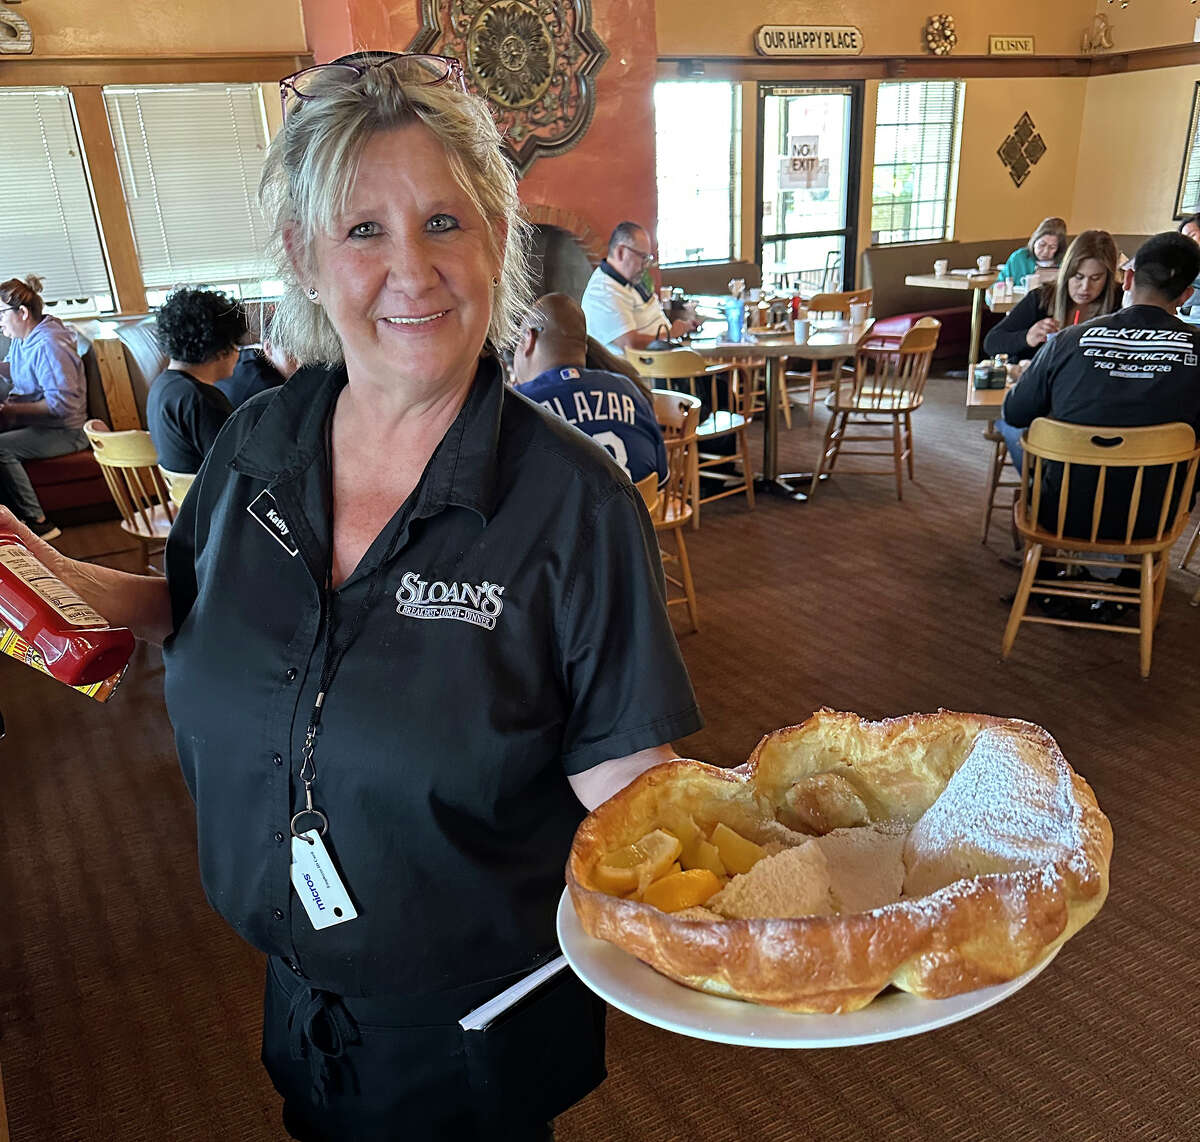 Kathy Mettam, servidora desde hace mucho tiempo en Sloan's en Indio, California, muestra el panqueque alemán del restaurante.